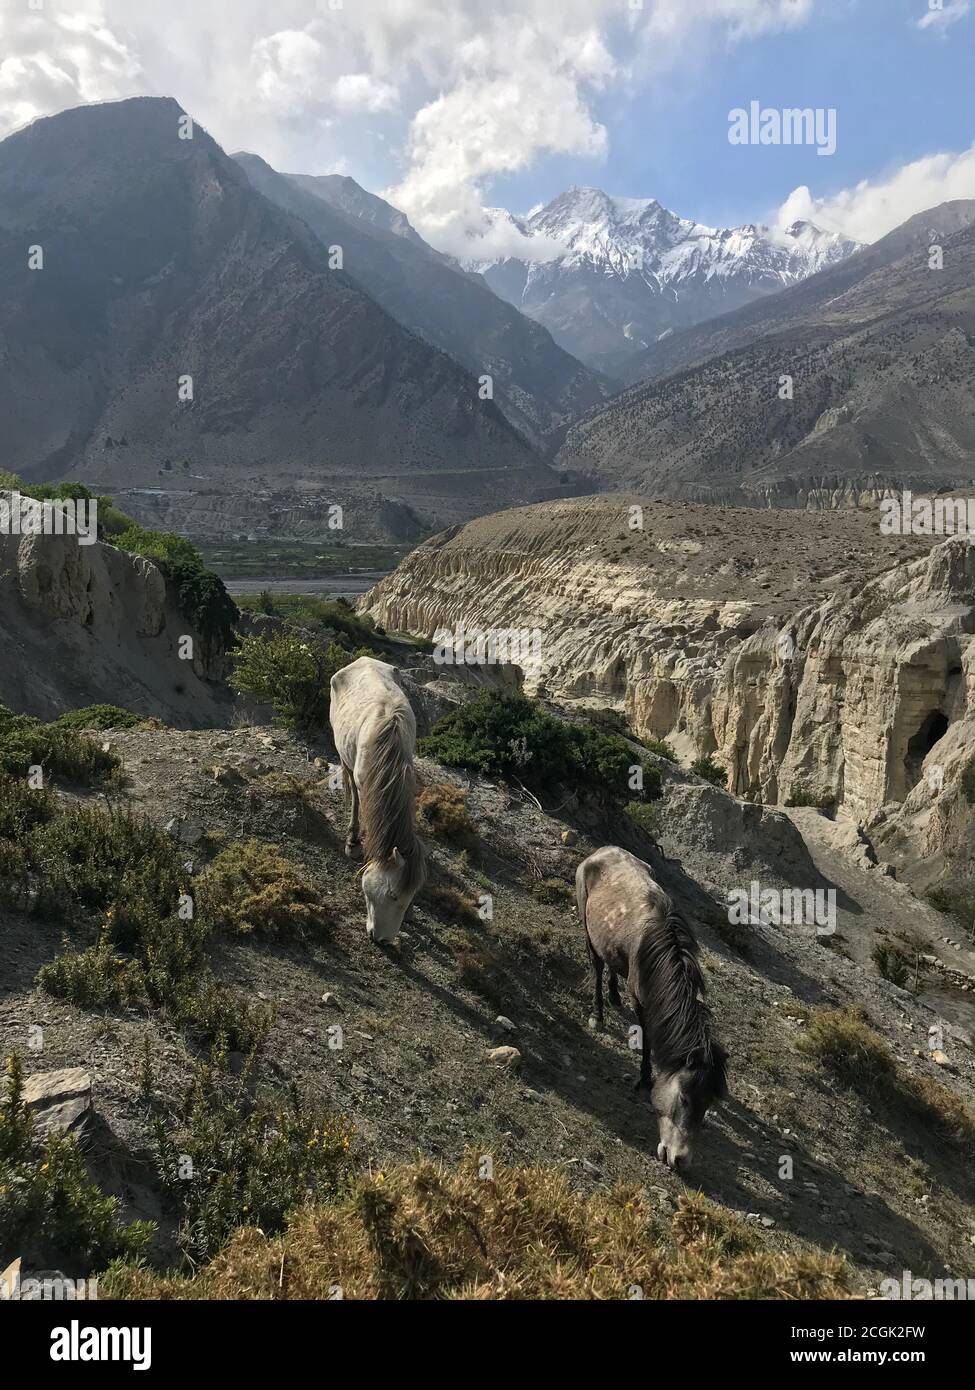 Chevaux paître sur les contreforts rocheux de la montagne Nilgiri au Népal. Chevaux himalayens dans le pâturage près du village de Marpha, zone de Dhawalagiri, district de Mustang Banque D'Images